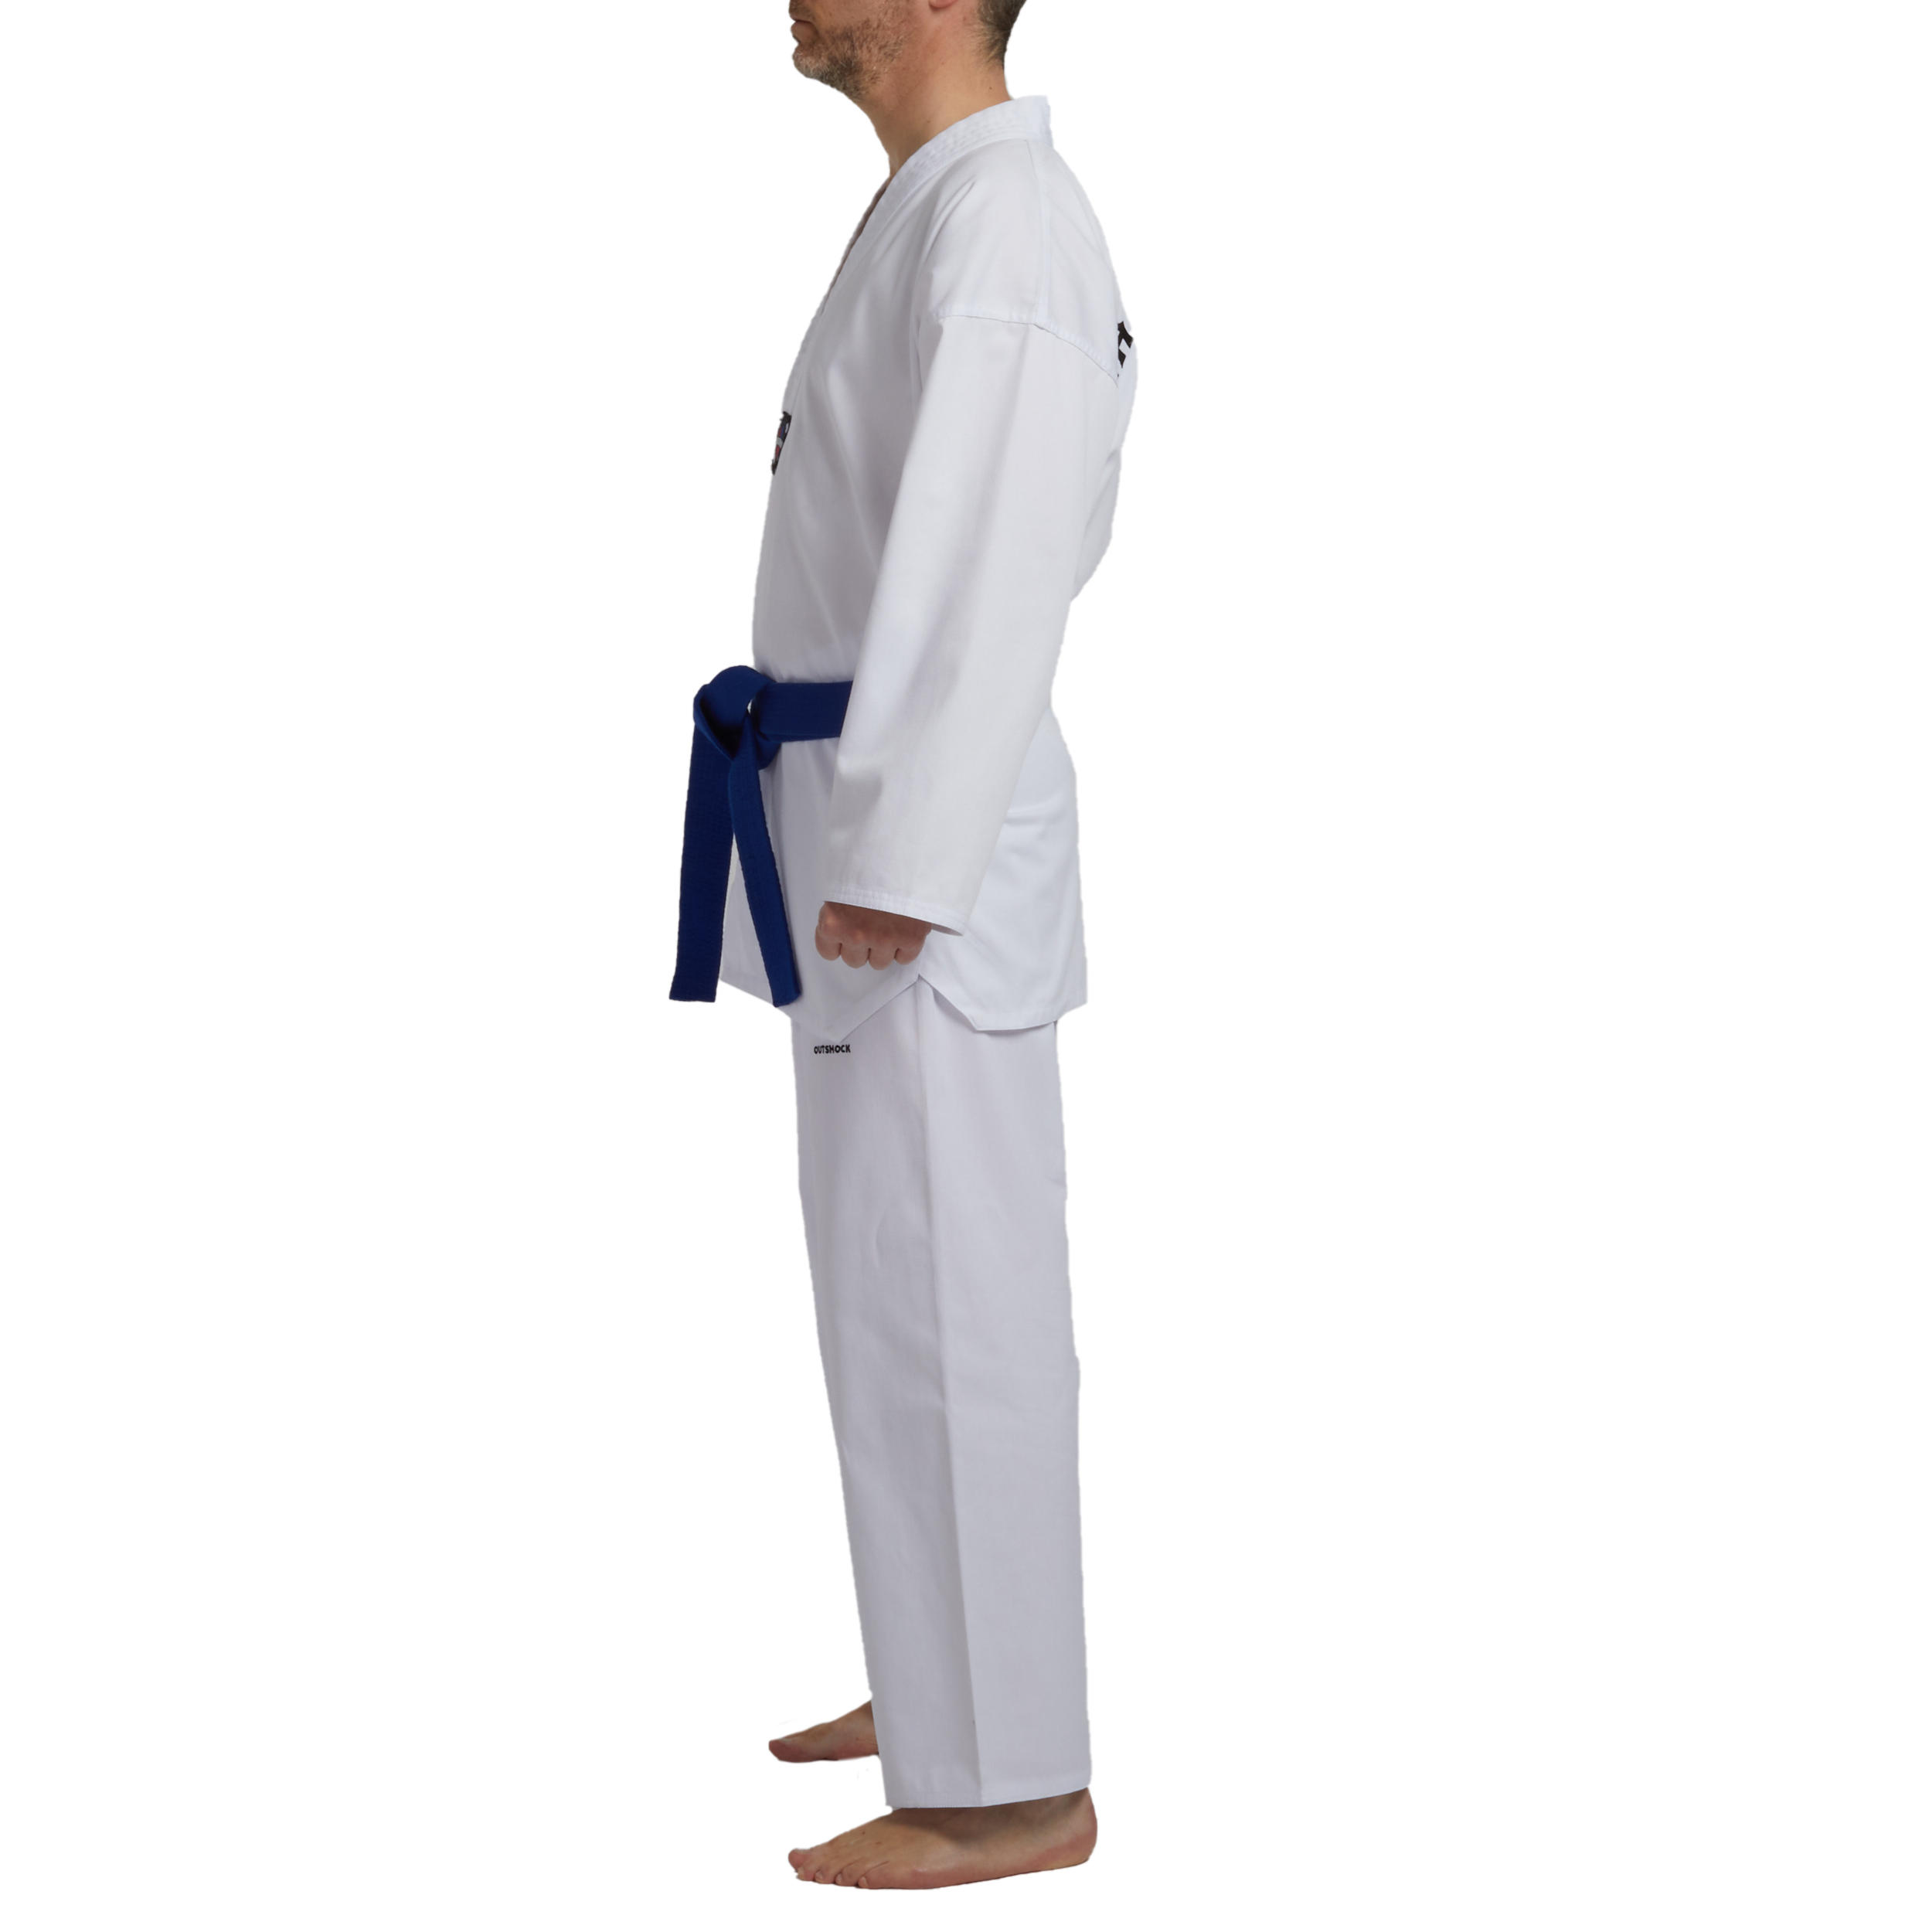 dobok taekwondo decathlon